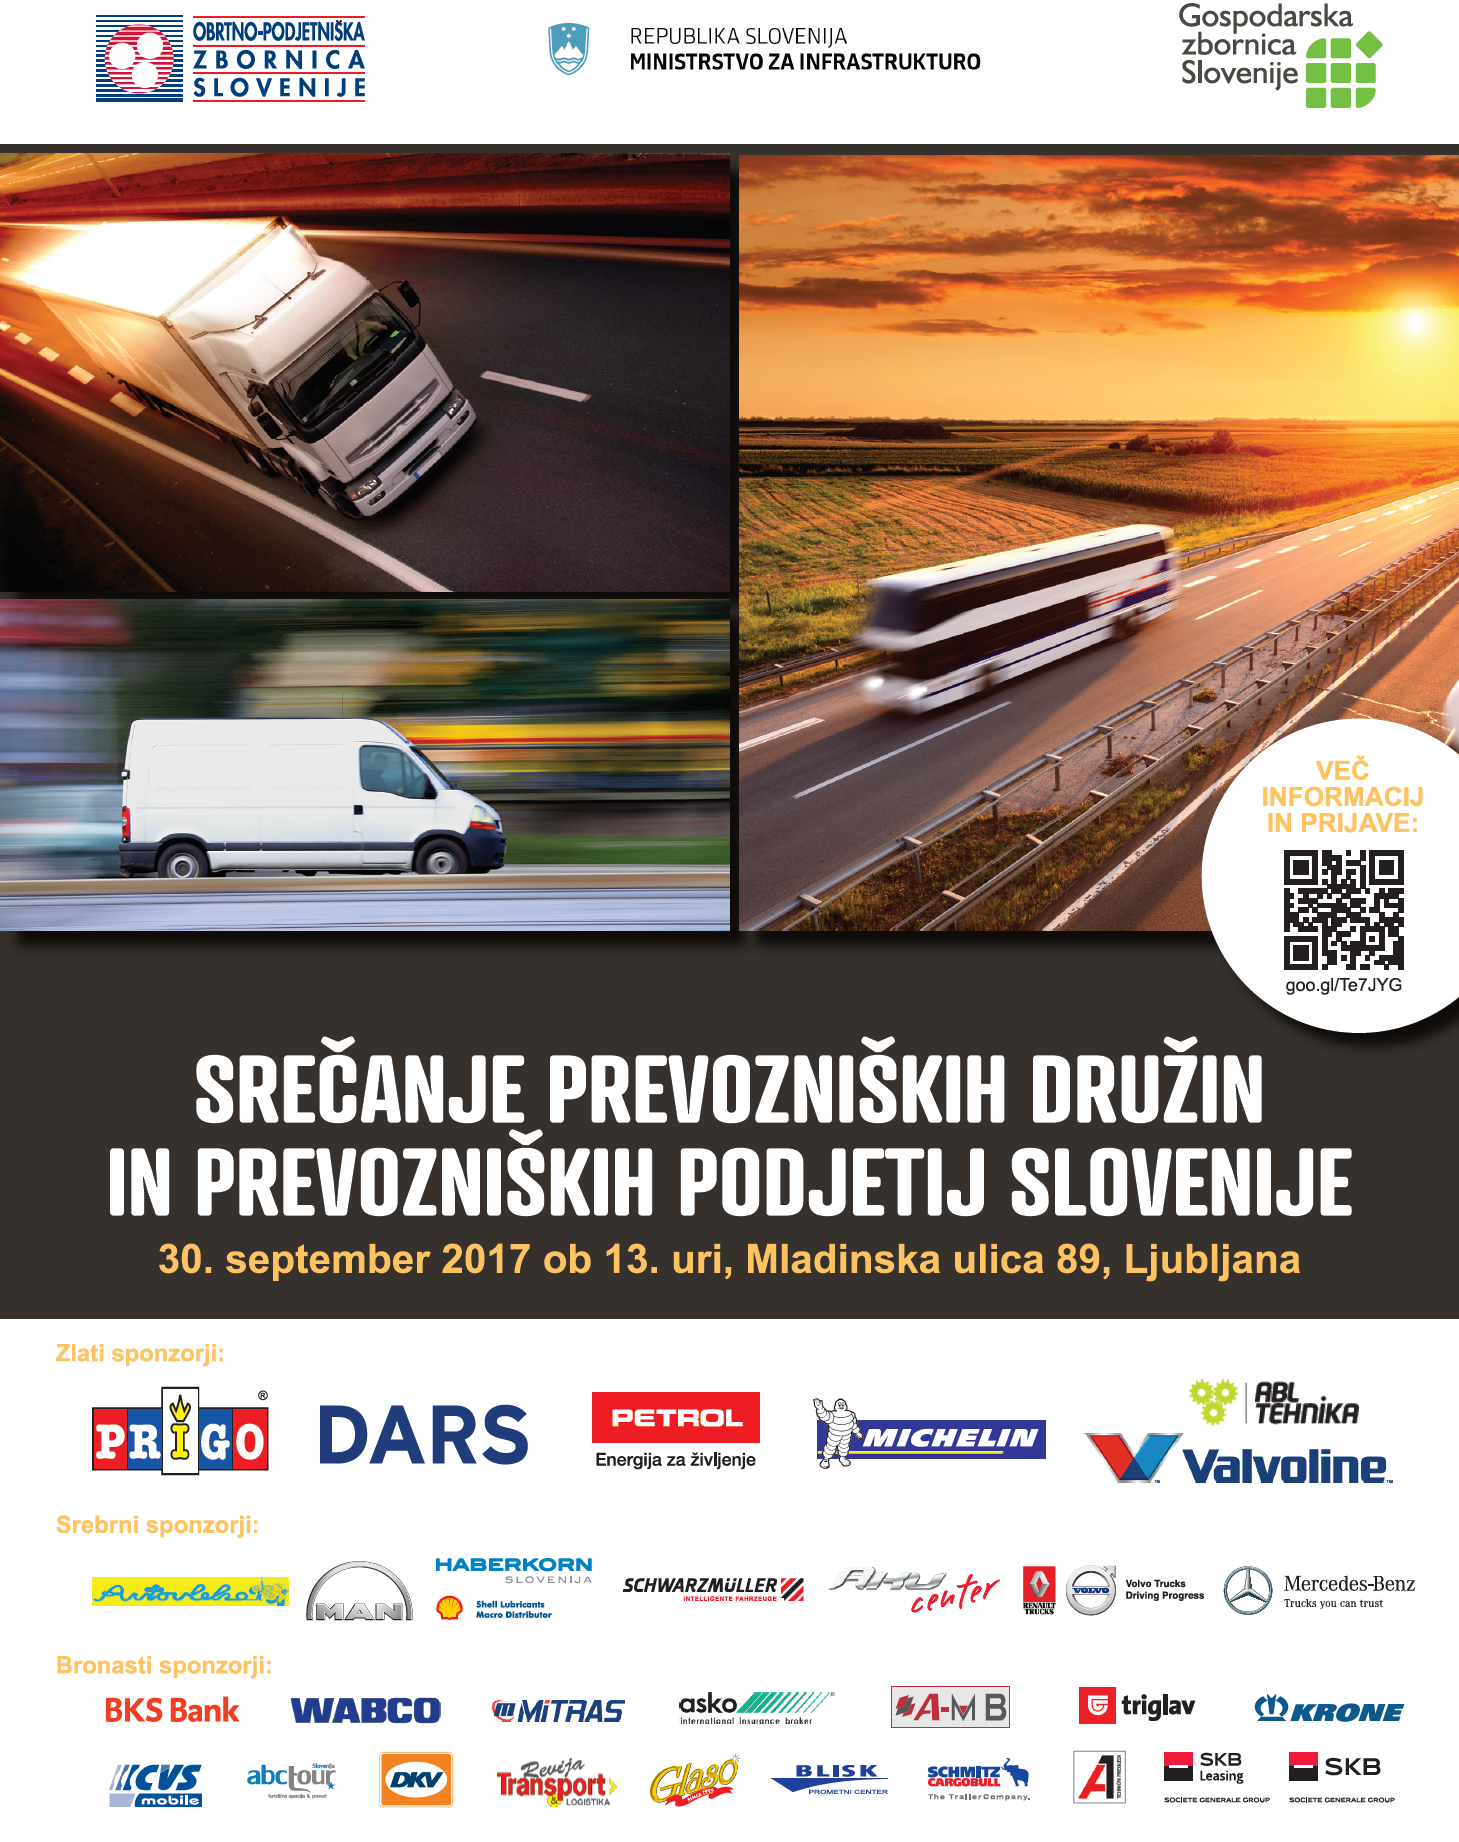 Arhiv: Srečanje prevozniških družin in prevozniških podjetij Slovenije